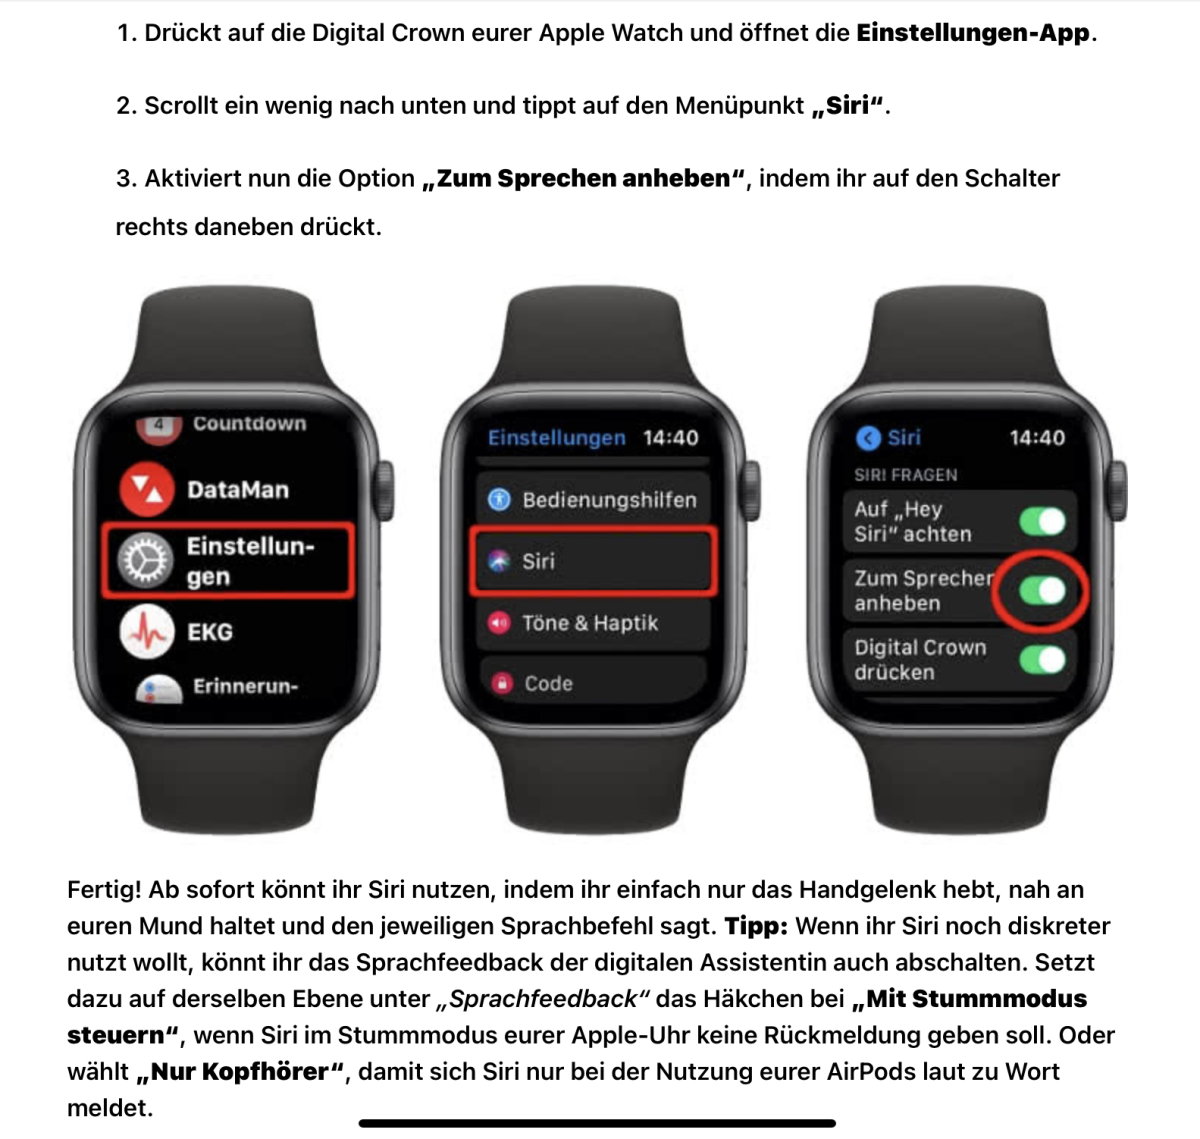 Apple Watch zum Sprechen Arm anheben.png